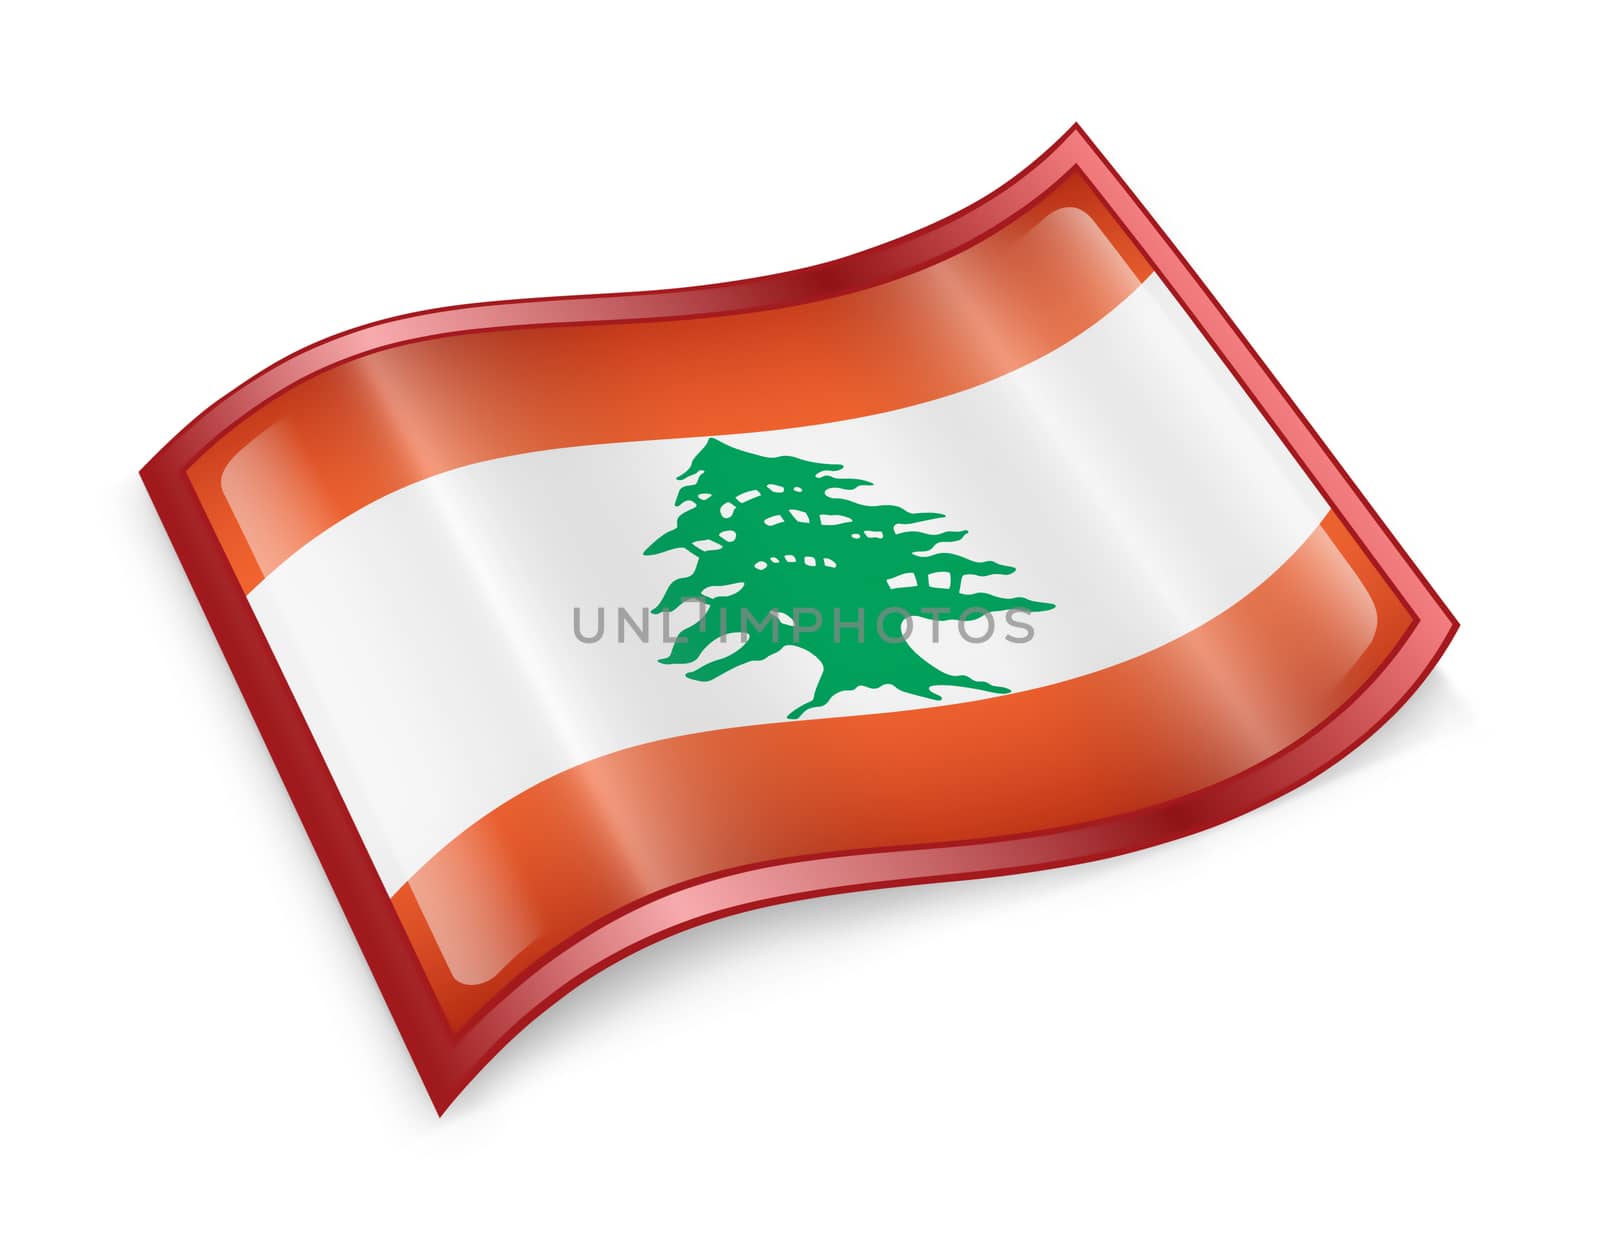 Lebanese Flag icon, isolated on white background.